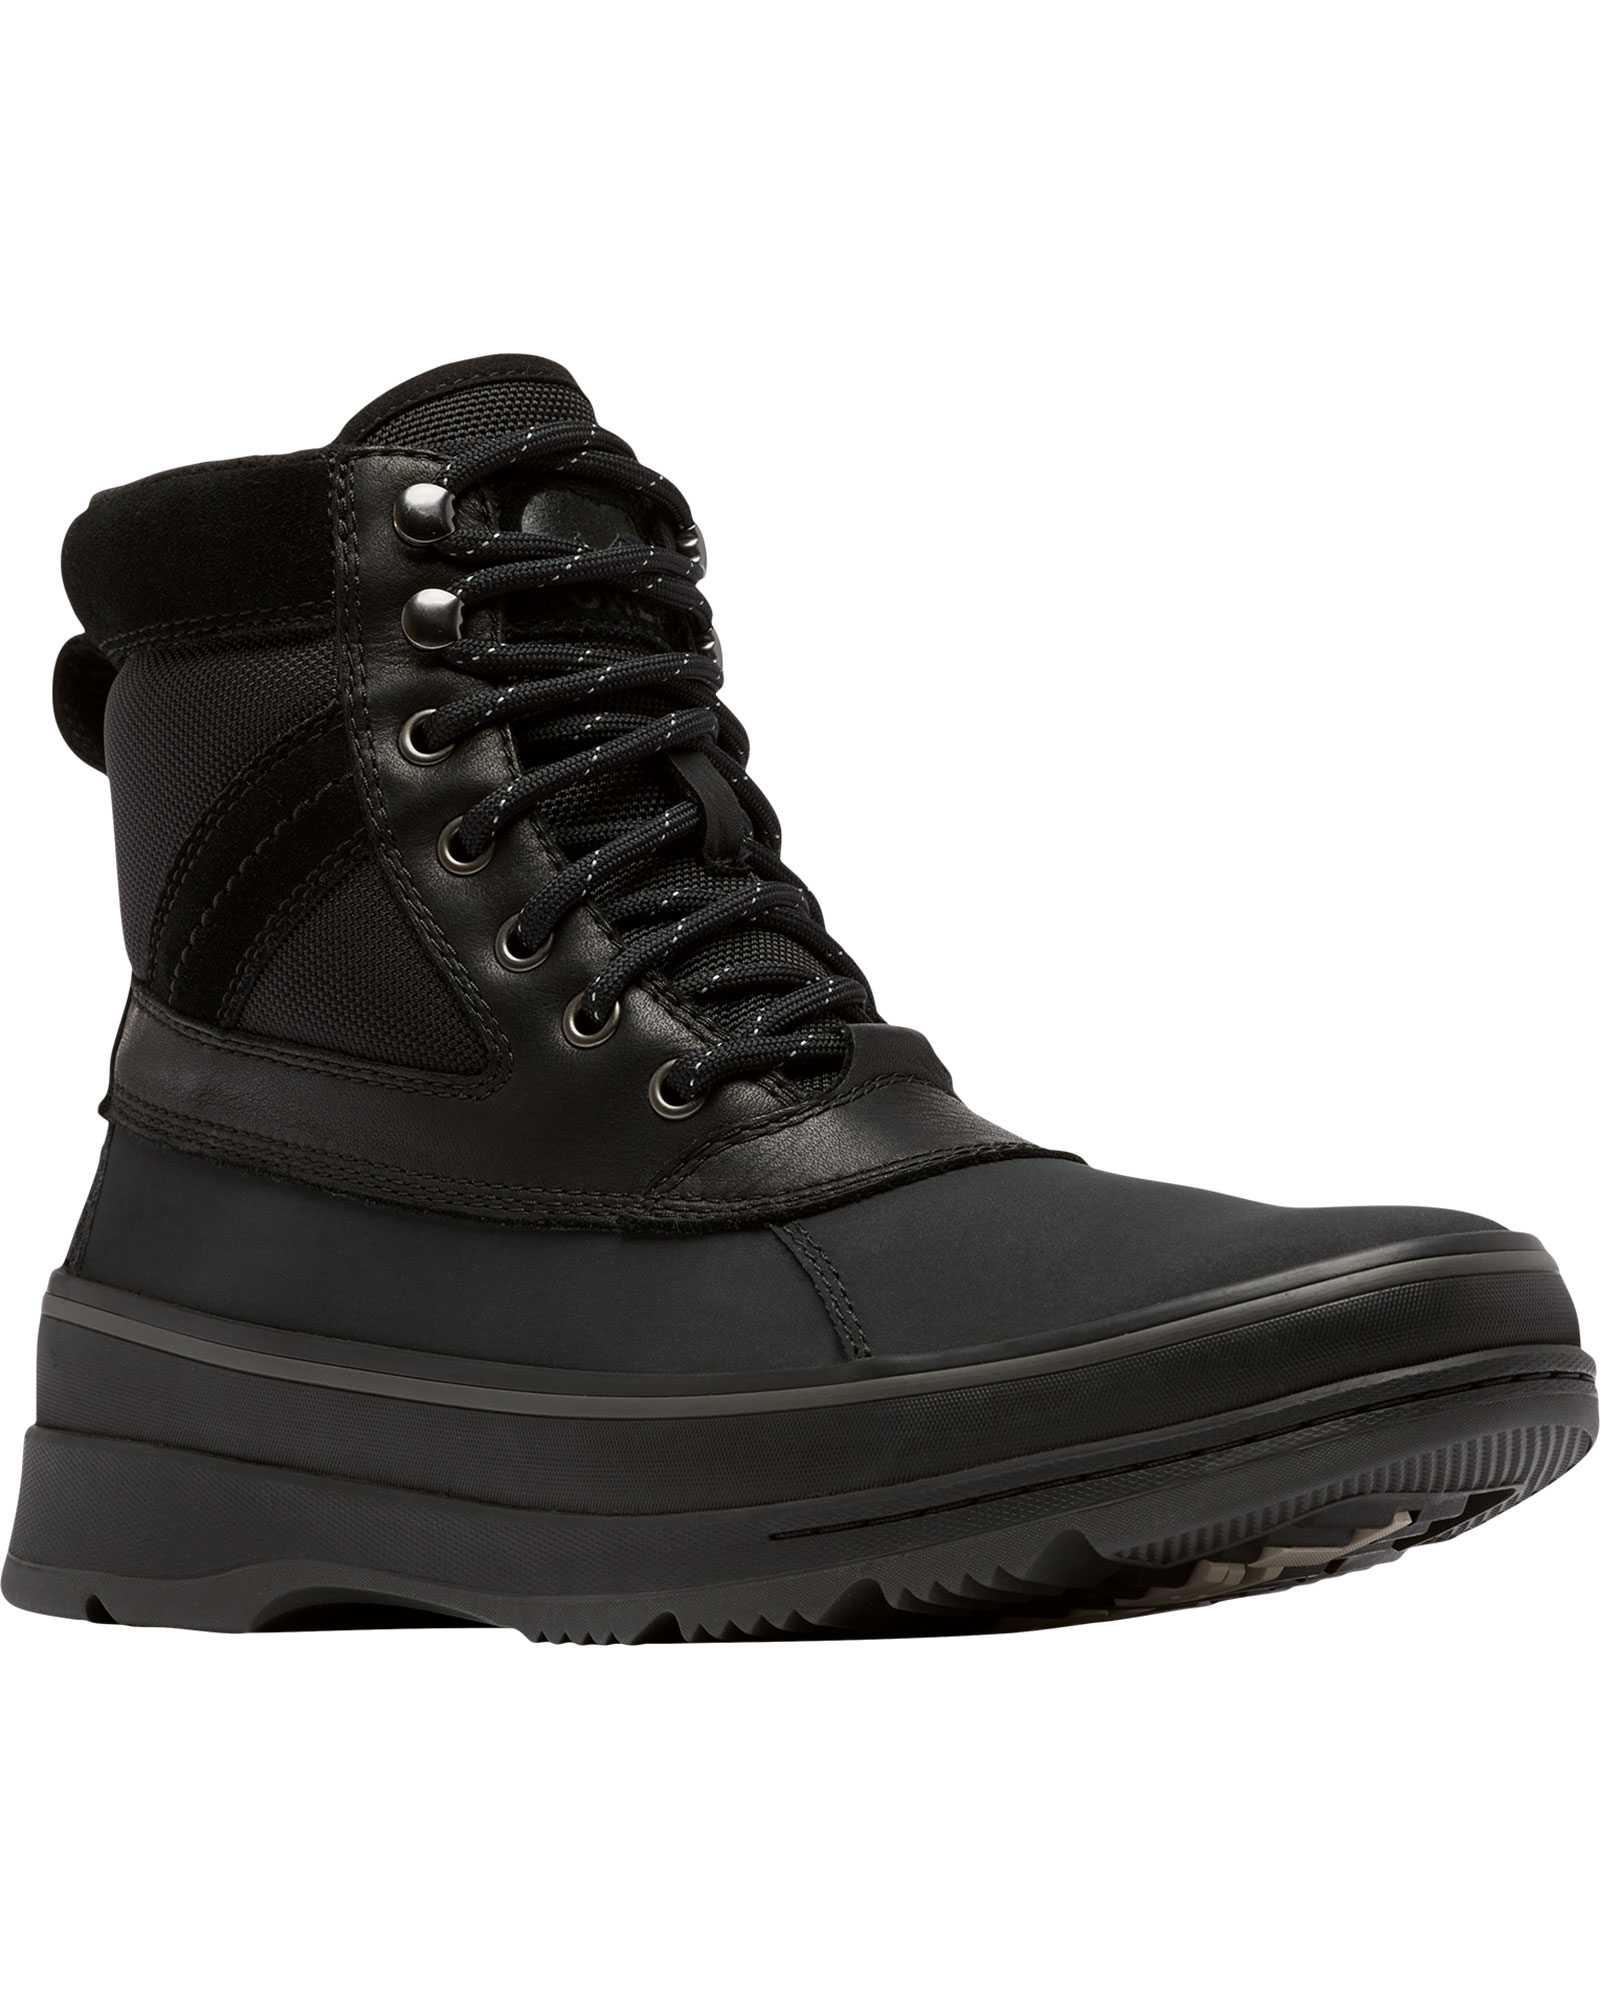 Sorel Ankeny II Waterproof Men’s Boots - Black/Jet UK 9